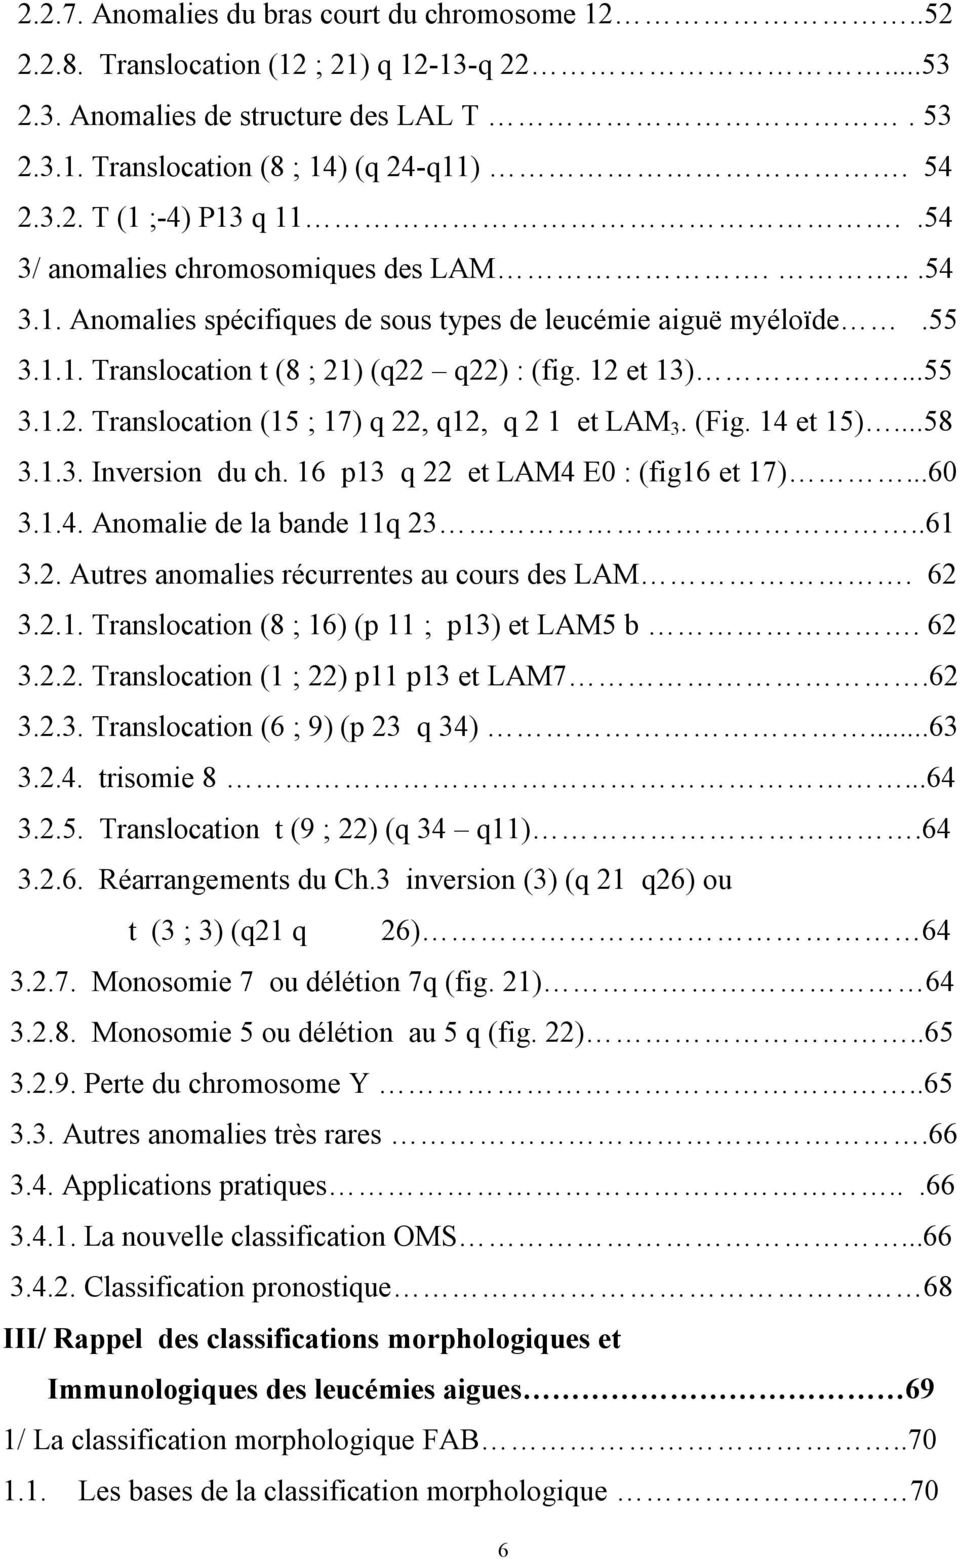 (Fig. 14 et 15)...58 3.1.3. Inversion du ch. 16 p13 q 22 et LAM4 E0 : (fig16 et 17)...60 3.1.4. Anomalie de la bande 11q 23..61 3.2. Autres anomalies récurrentes au cours des LAM. 62 3.2.1. Translocation (8 ; 16) (p 11 ; p13) et LAM5 b.